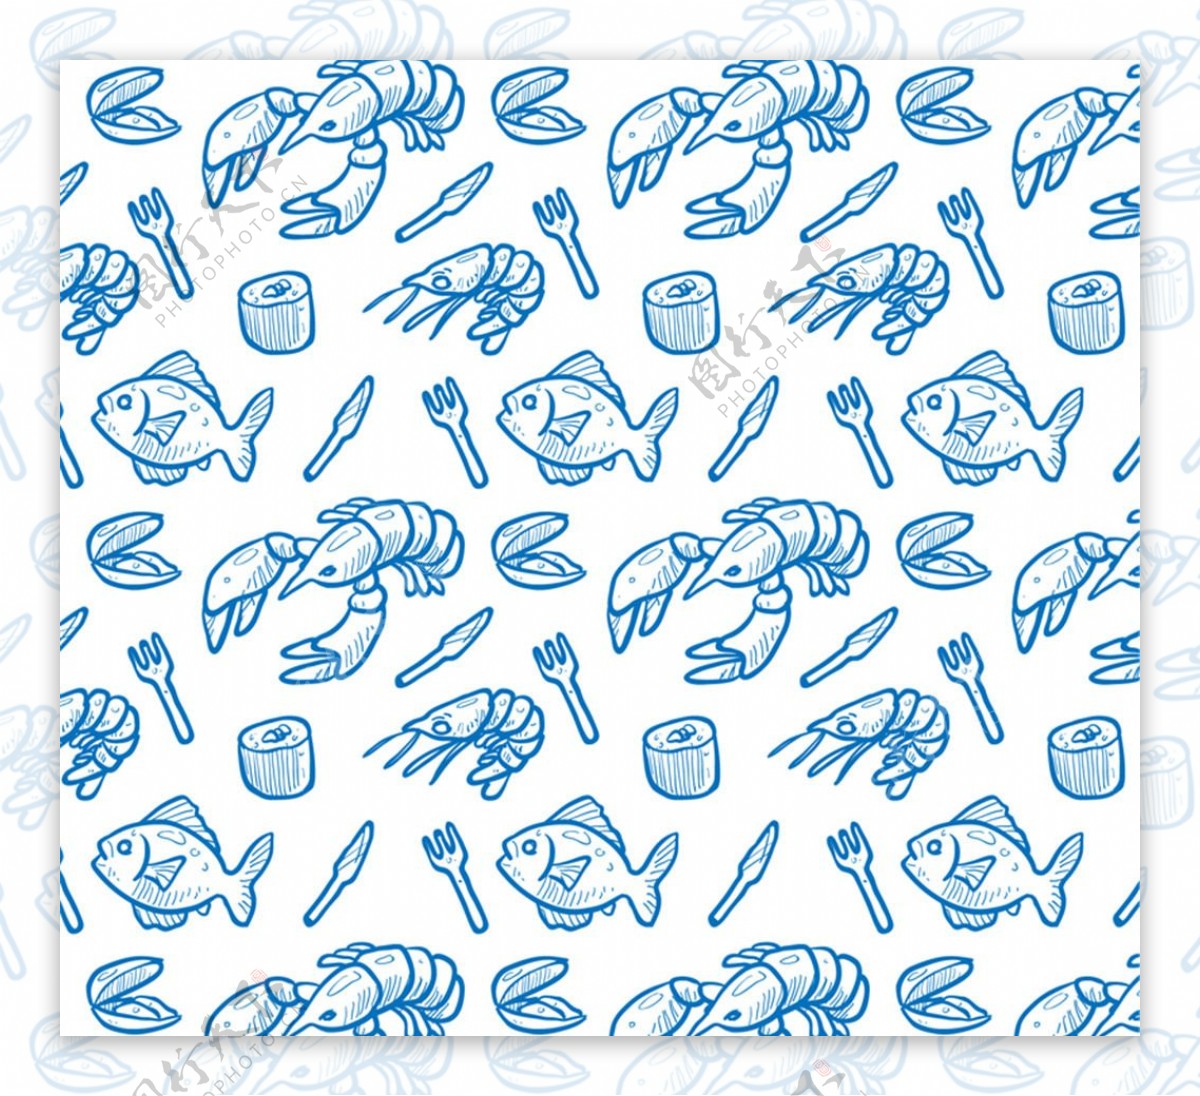 蓝色海鲜食品无缝背景矢量图